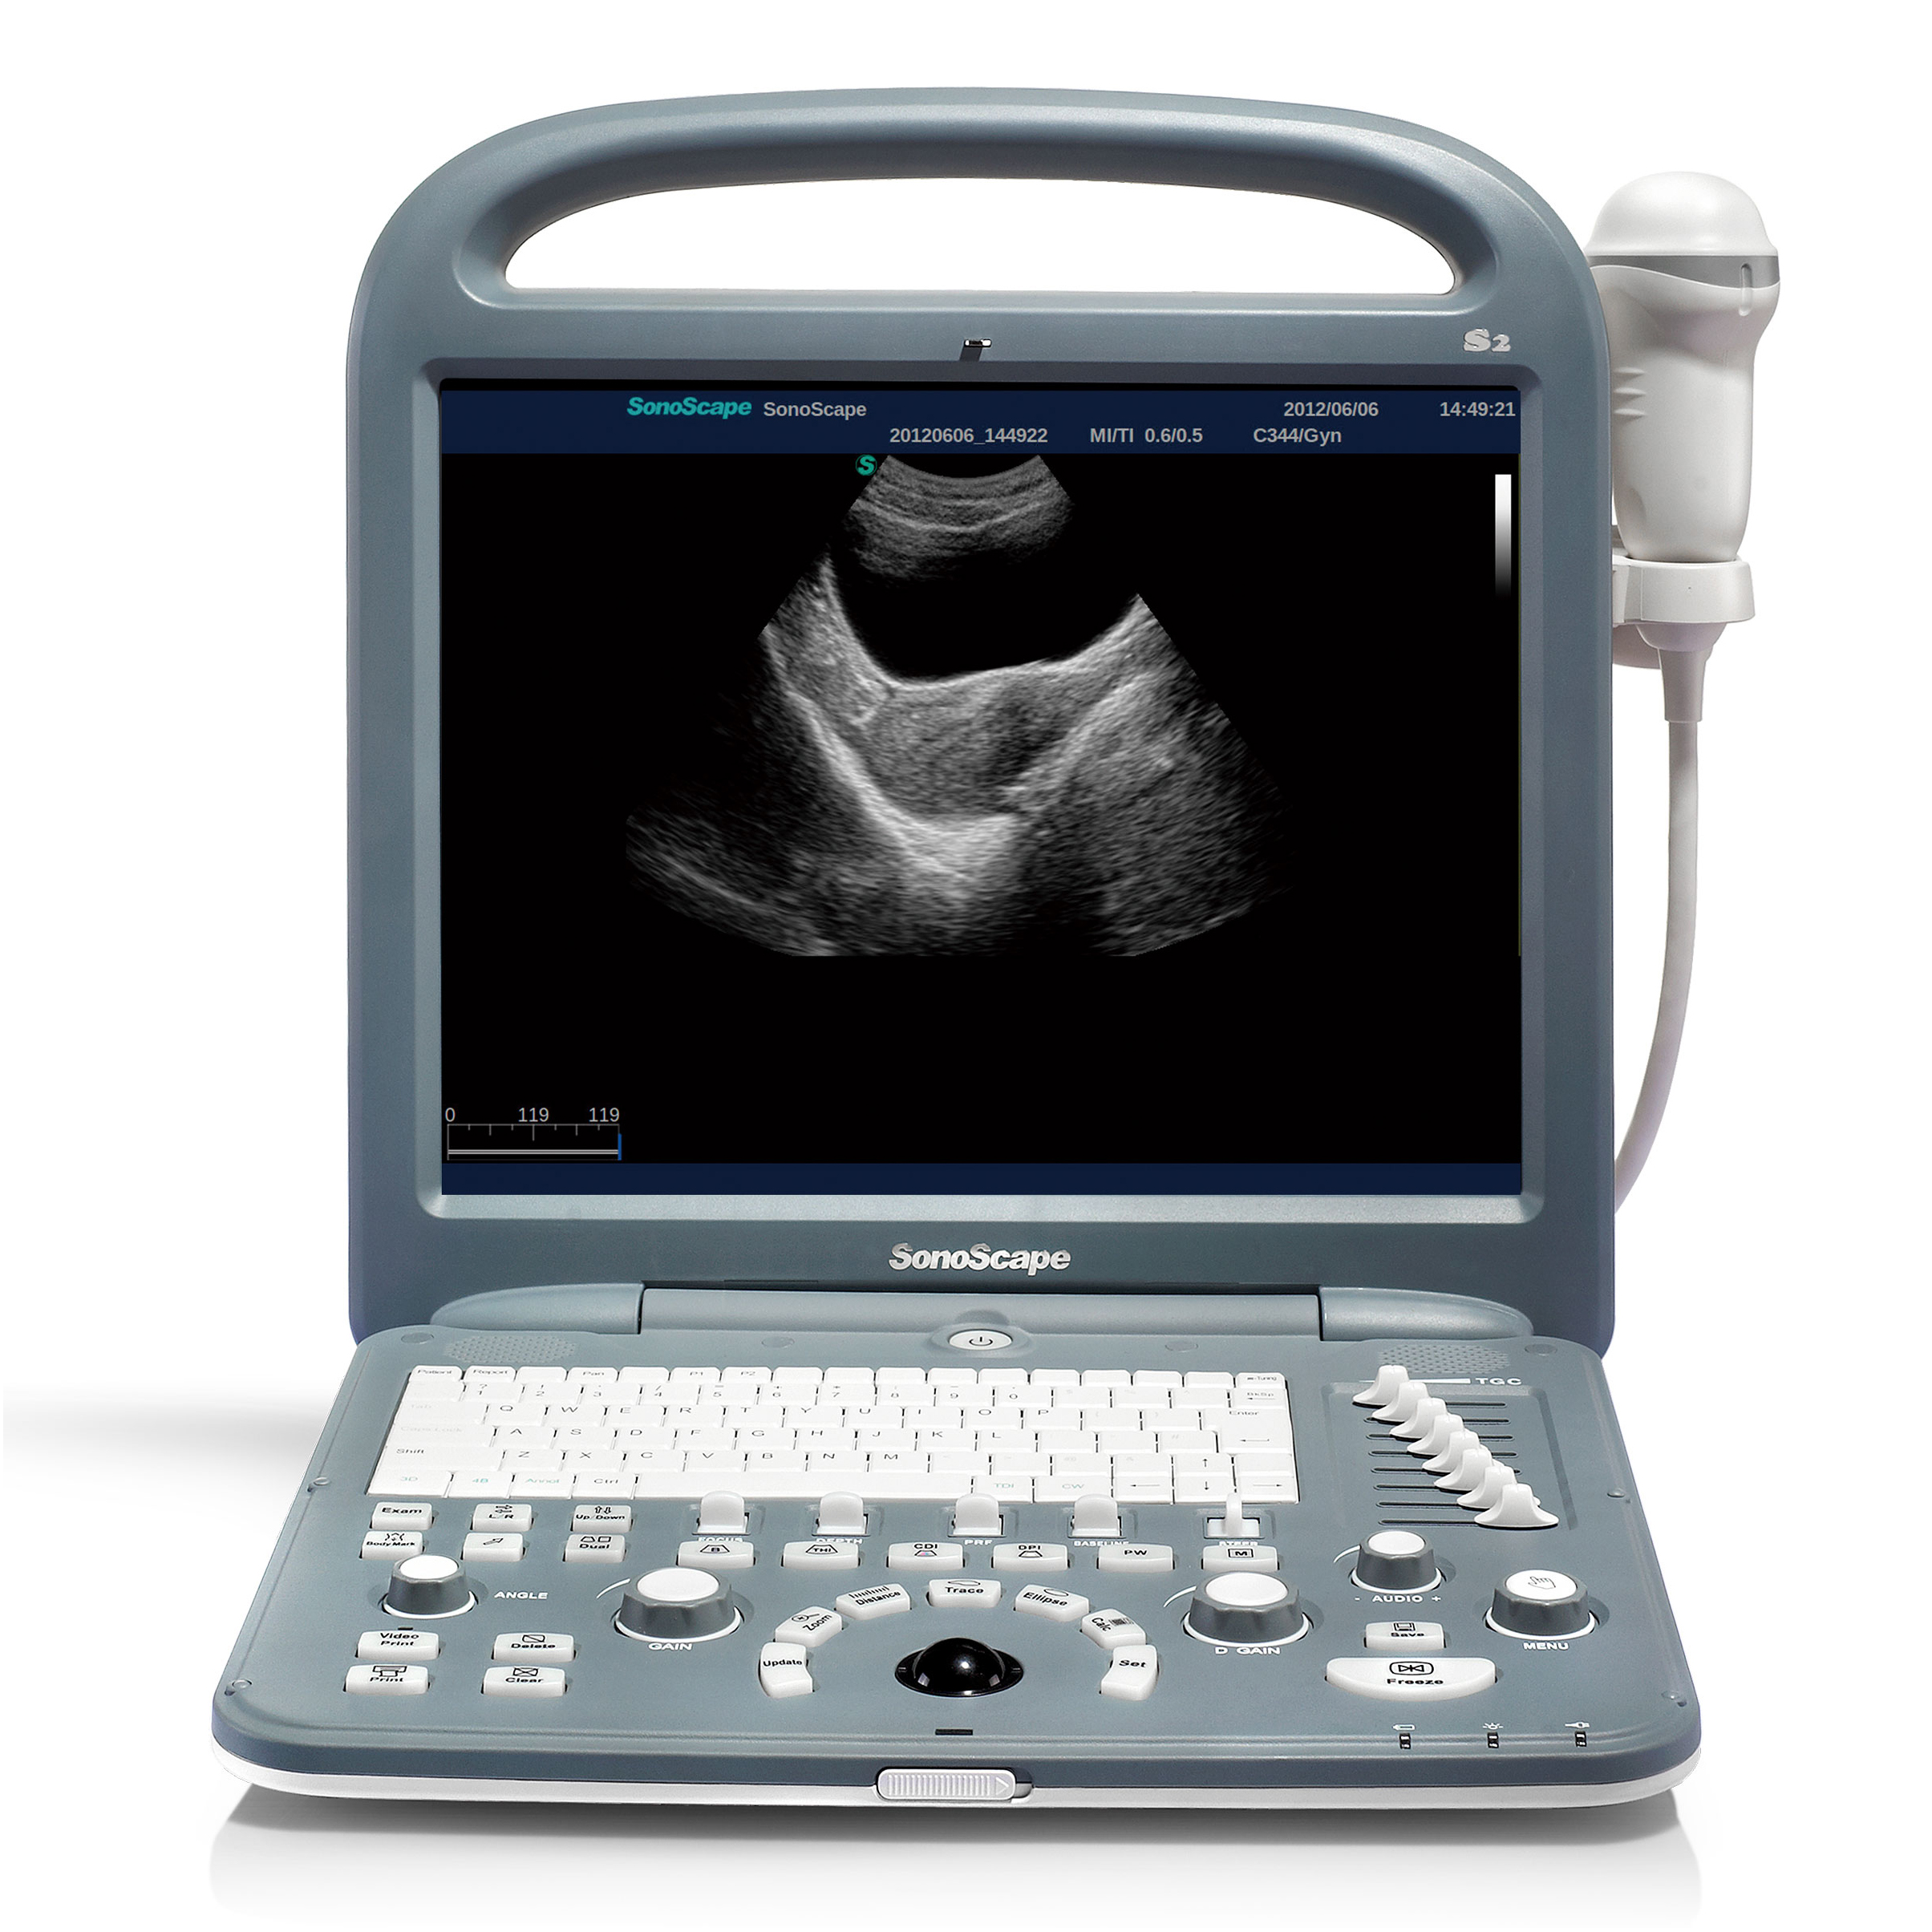 SonoScape S2 Yüksek Çözünürlüklü Hastane Kardiyoloji ve Acil Kullanım İçin Taşınabilir Dizüstü Ultrason Cihazı Kullanın